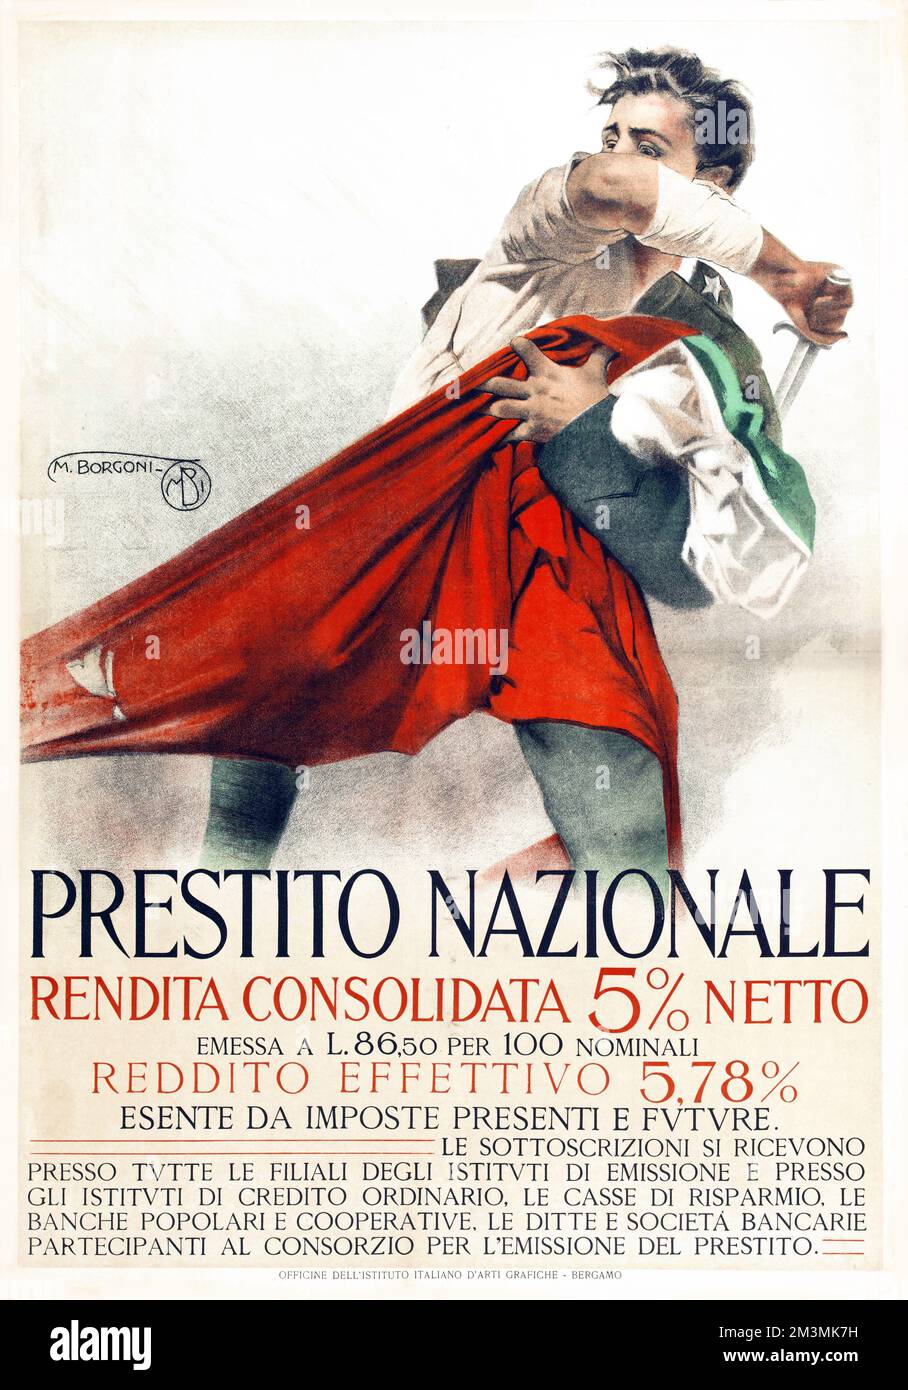 Prestito nazionale rendita consolidata 5% netto poster by Mario Borgoni, 1917-1918 - retouched Stock Photo